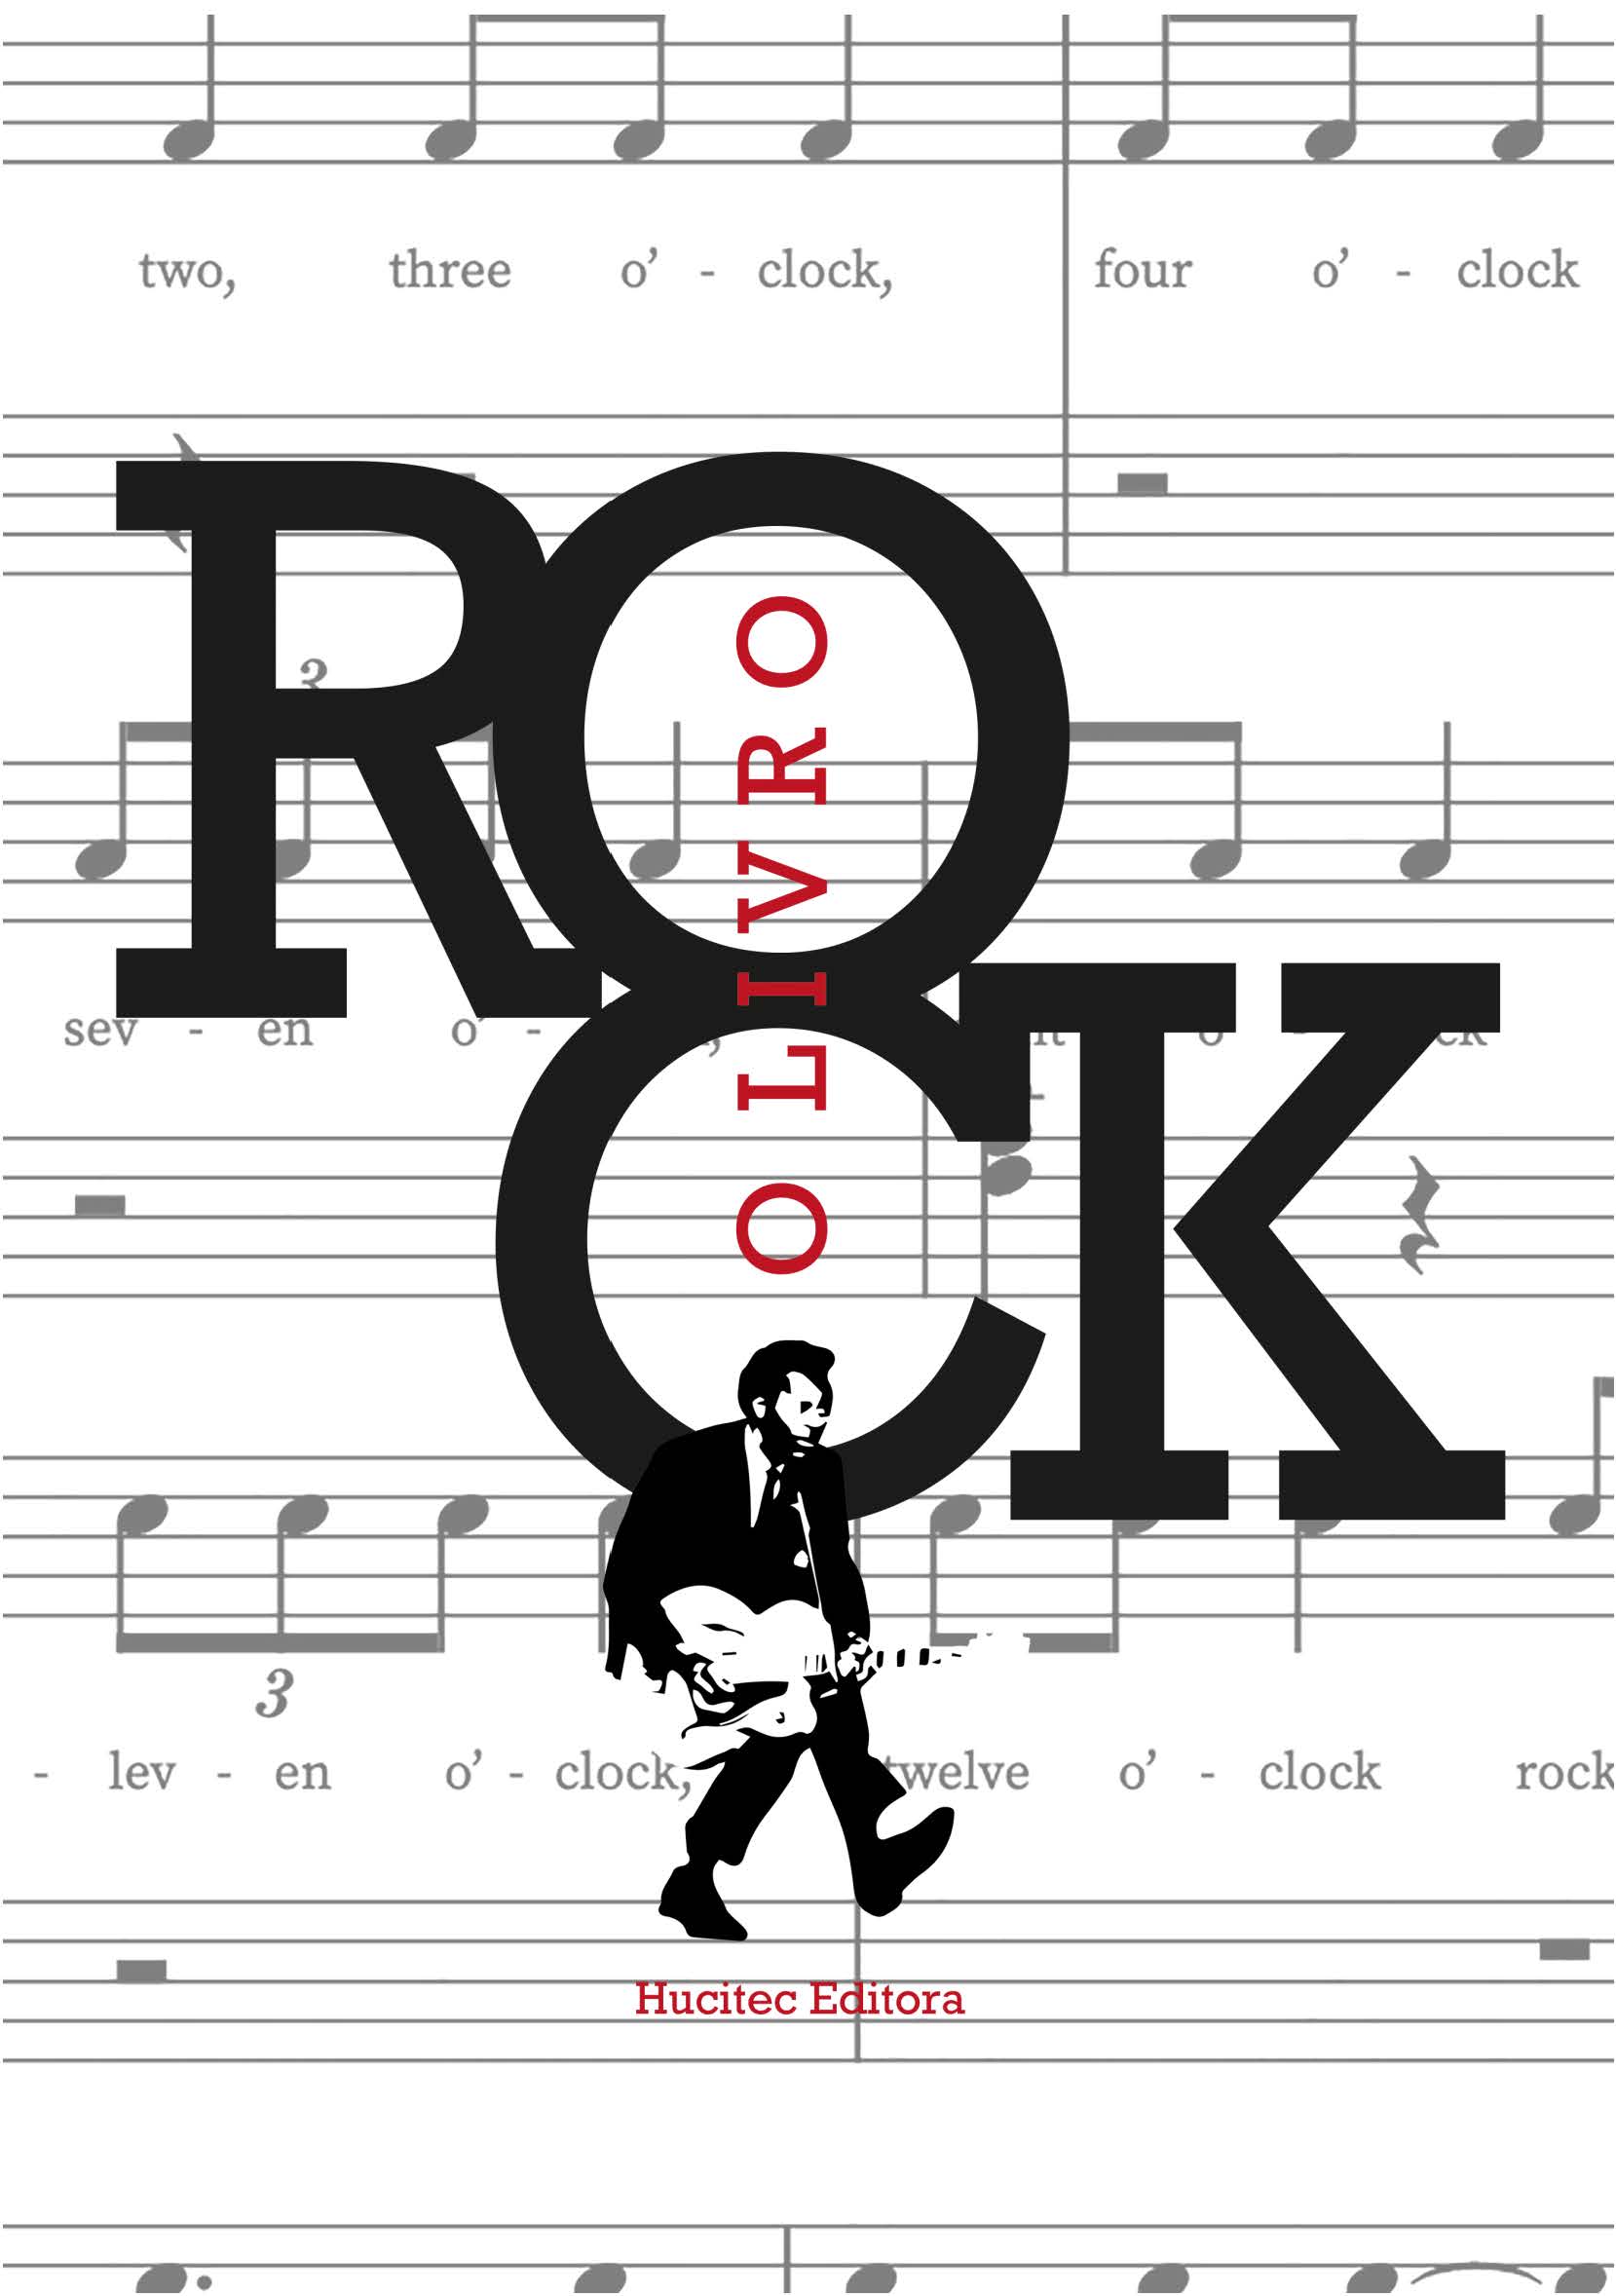 Rock para pequenos edição nacional: livro ilustrado para futuros roqueiros  - Outros Livros - Magazine Luiza